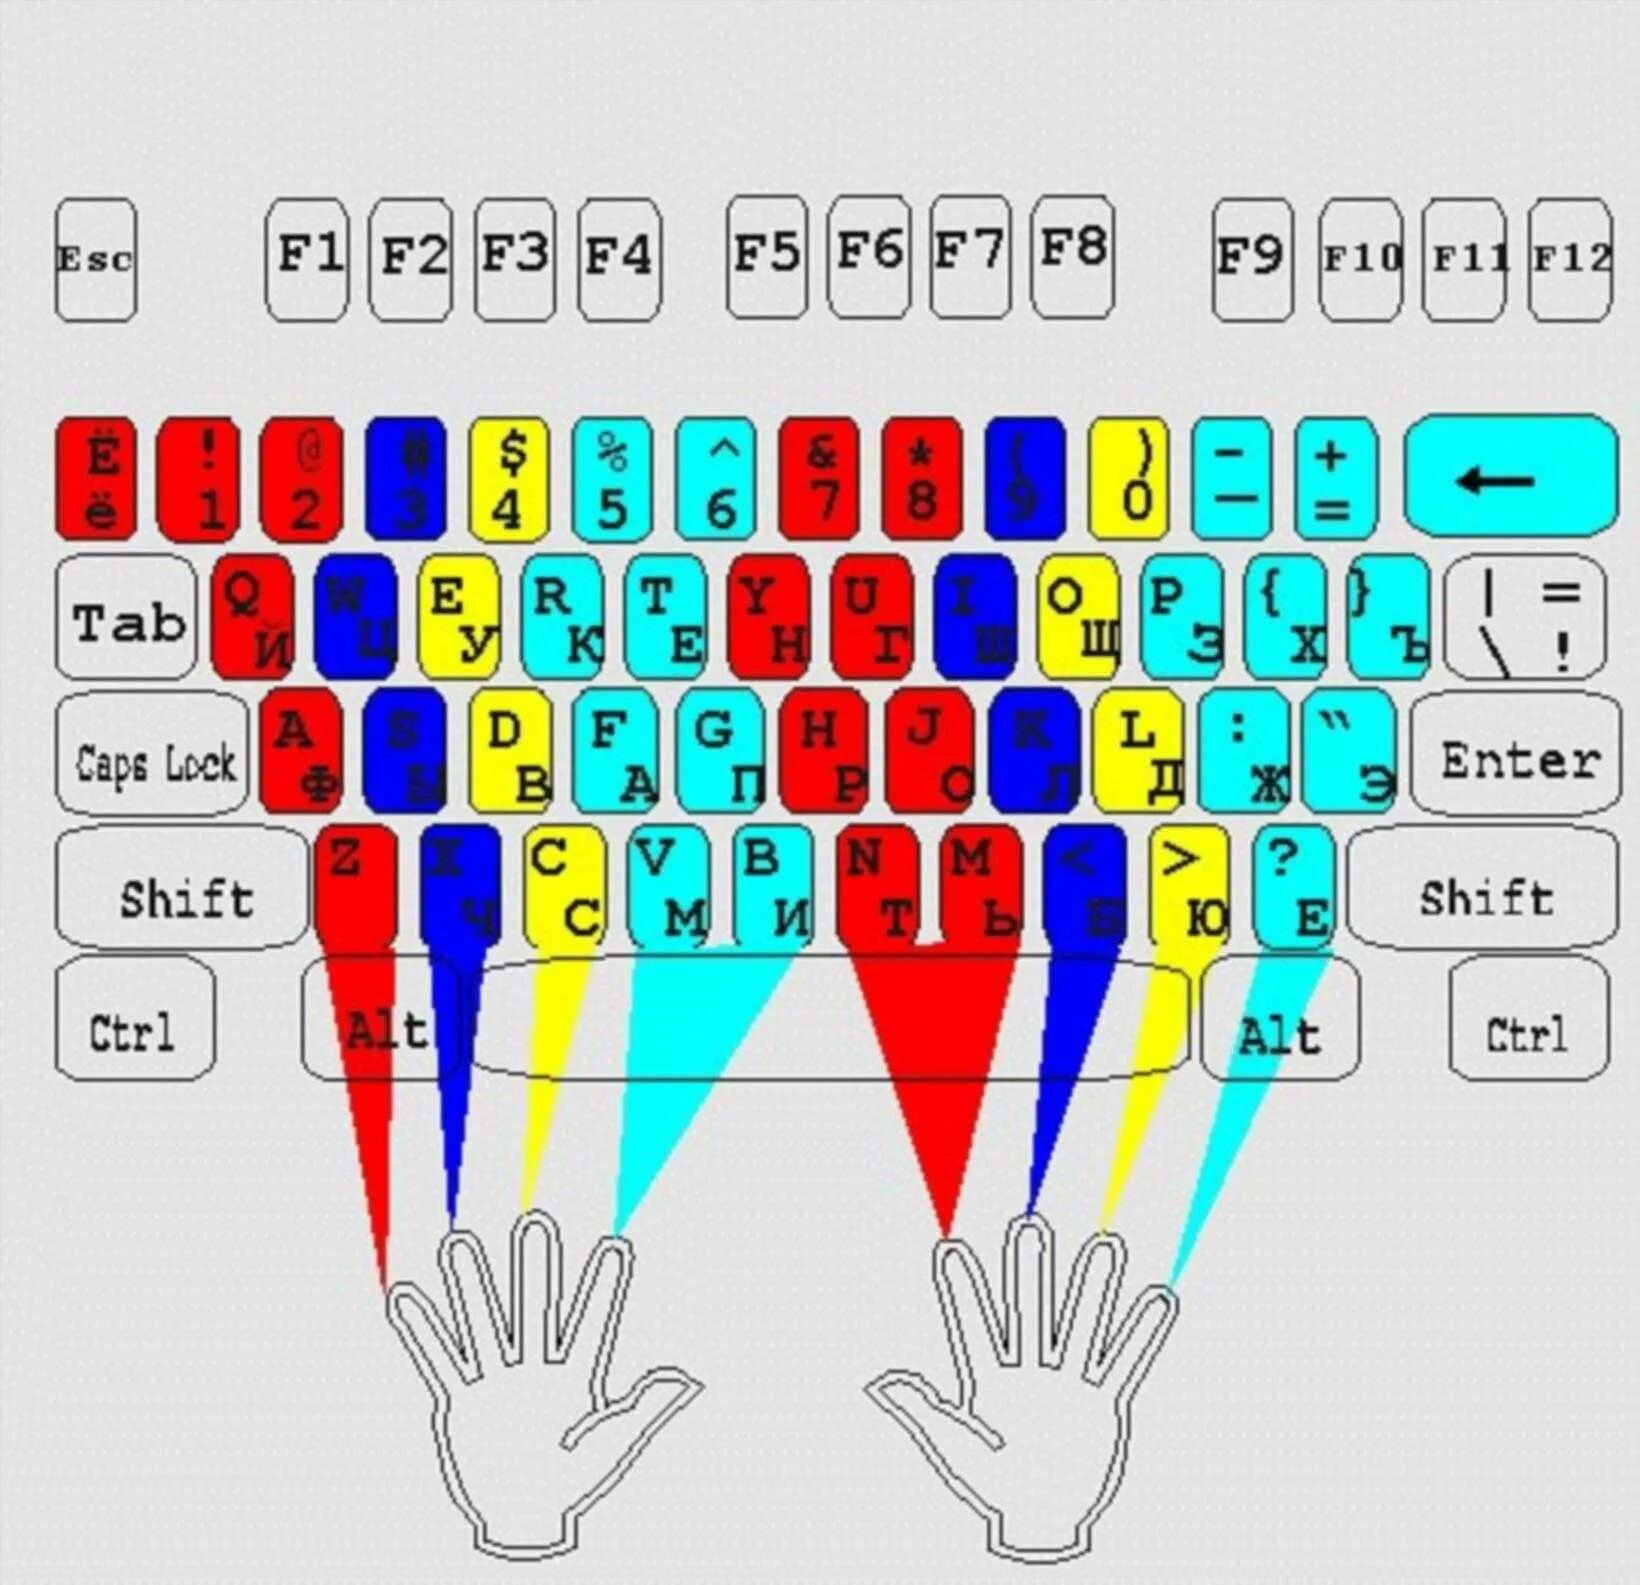 Клавиатура 10 пальцевый метод. Слепой десятипальцевый метод печати. Слепой 10 пальцевый метод печати вся клавиатура. Раскладка клавиатуры десятипальцевый метод. Картинка клавиатуры для слепой печати